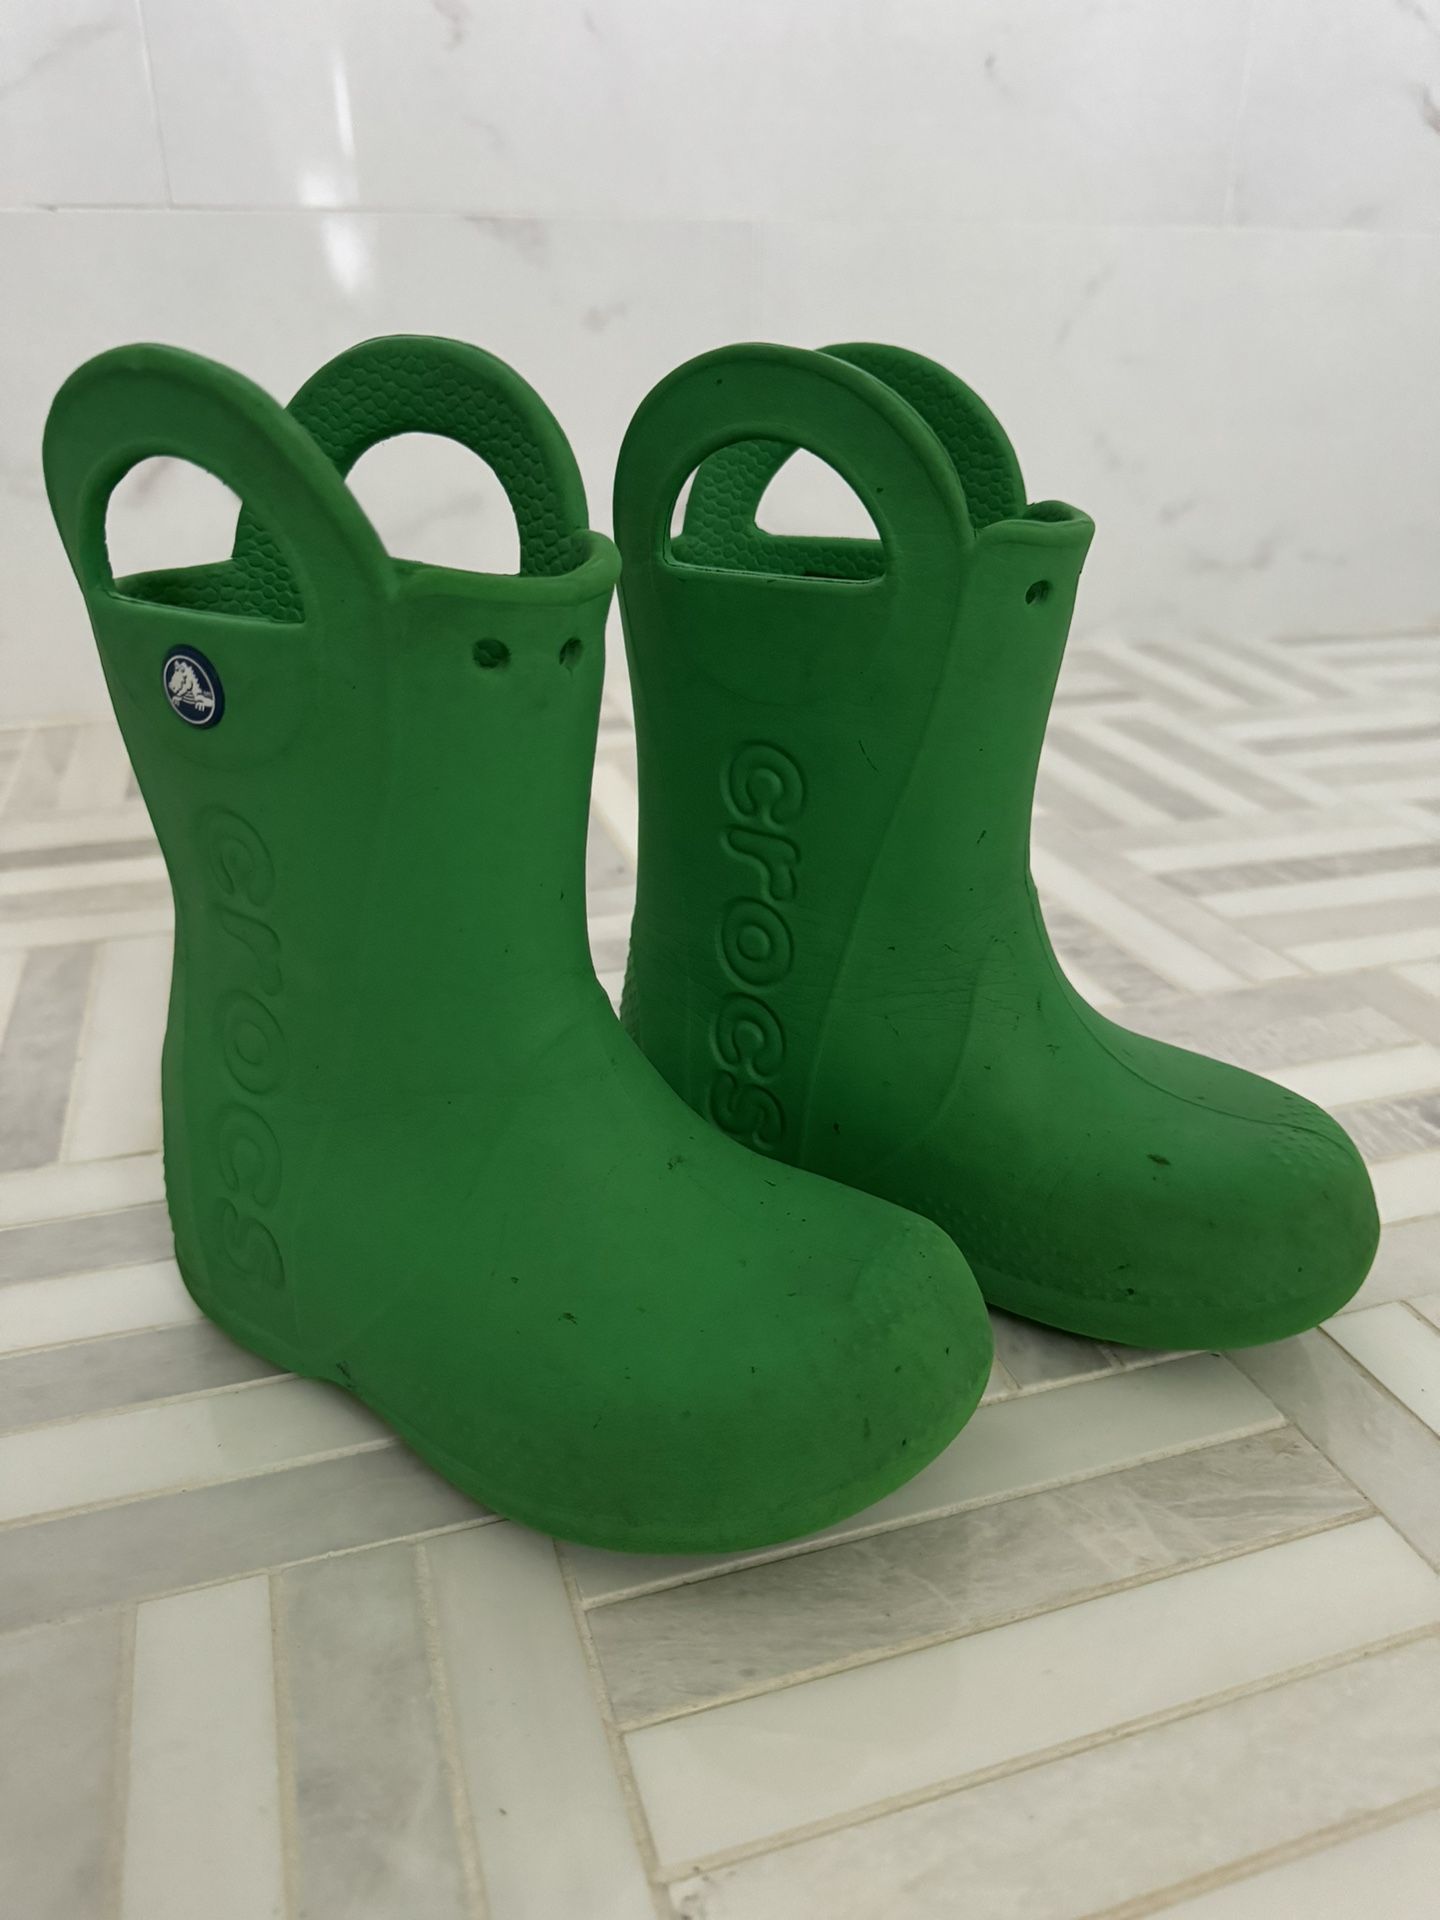 Kids Crocs Rain boots